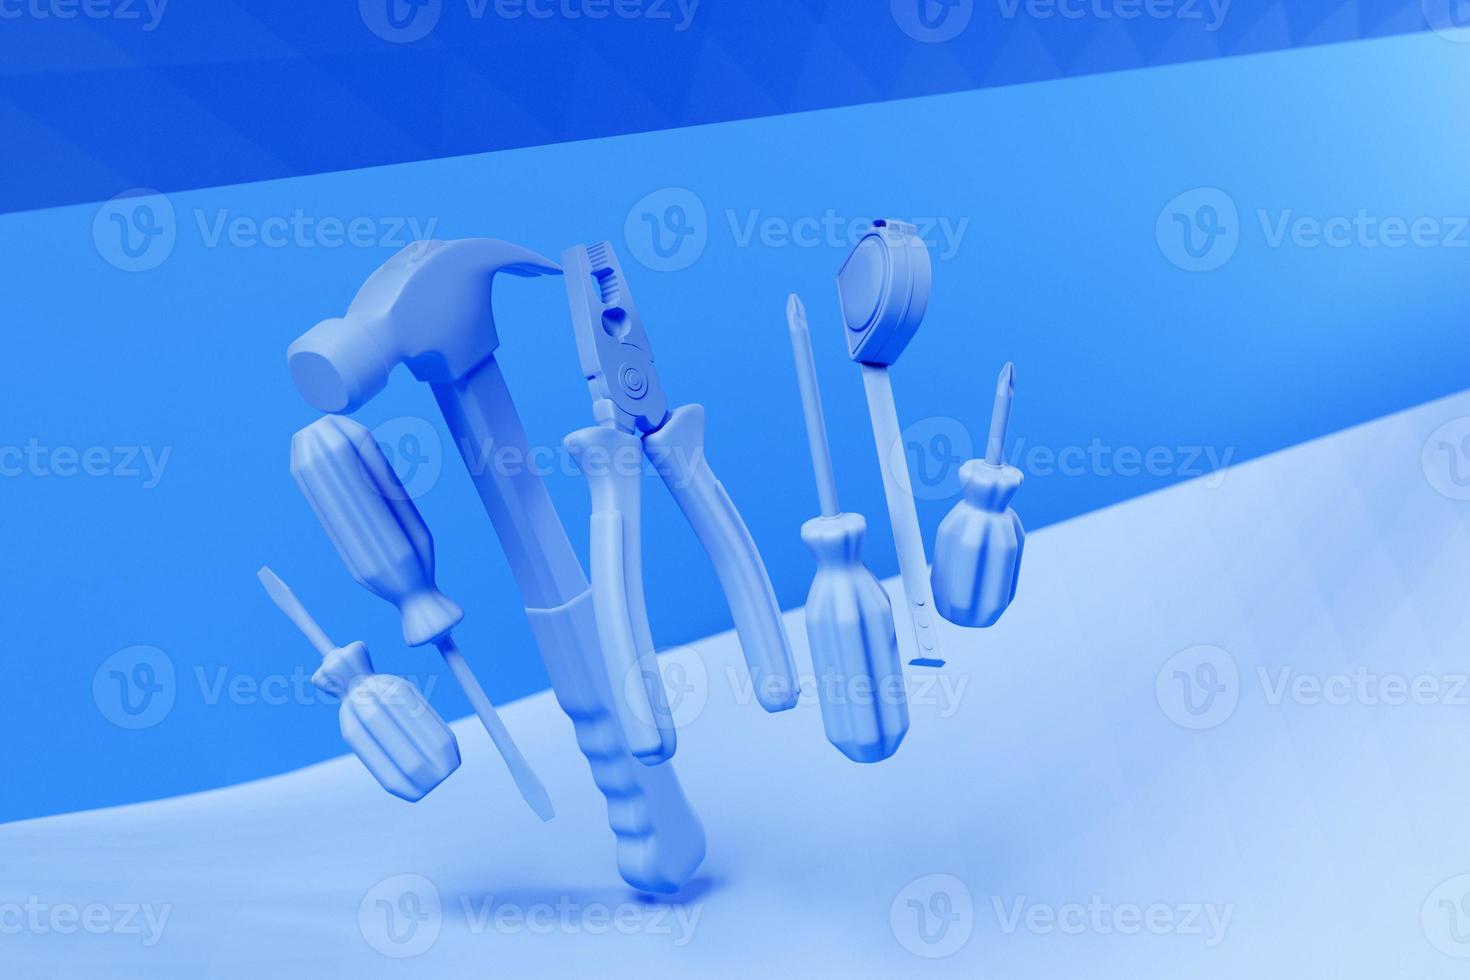 3D-illustration blå handverktyg skruvmejsel, hammare, tång, skruvar, etc. för handgjorda. olika arbetsredskap. konstruktion, konstruktion, renovering koncept. foto